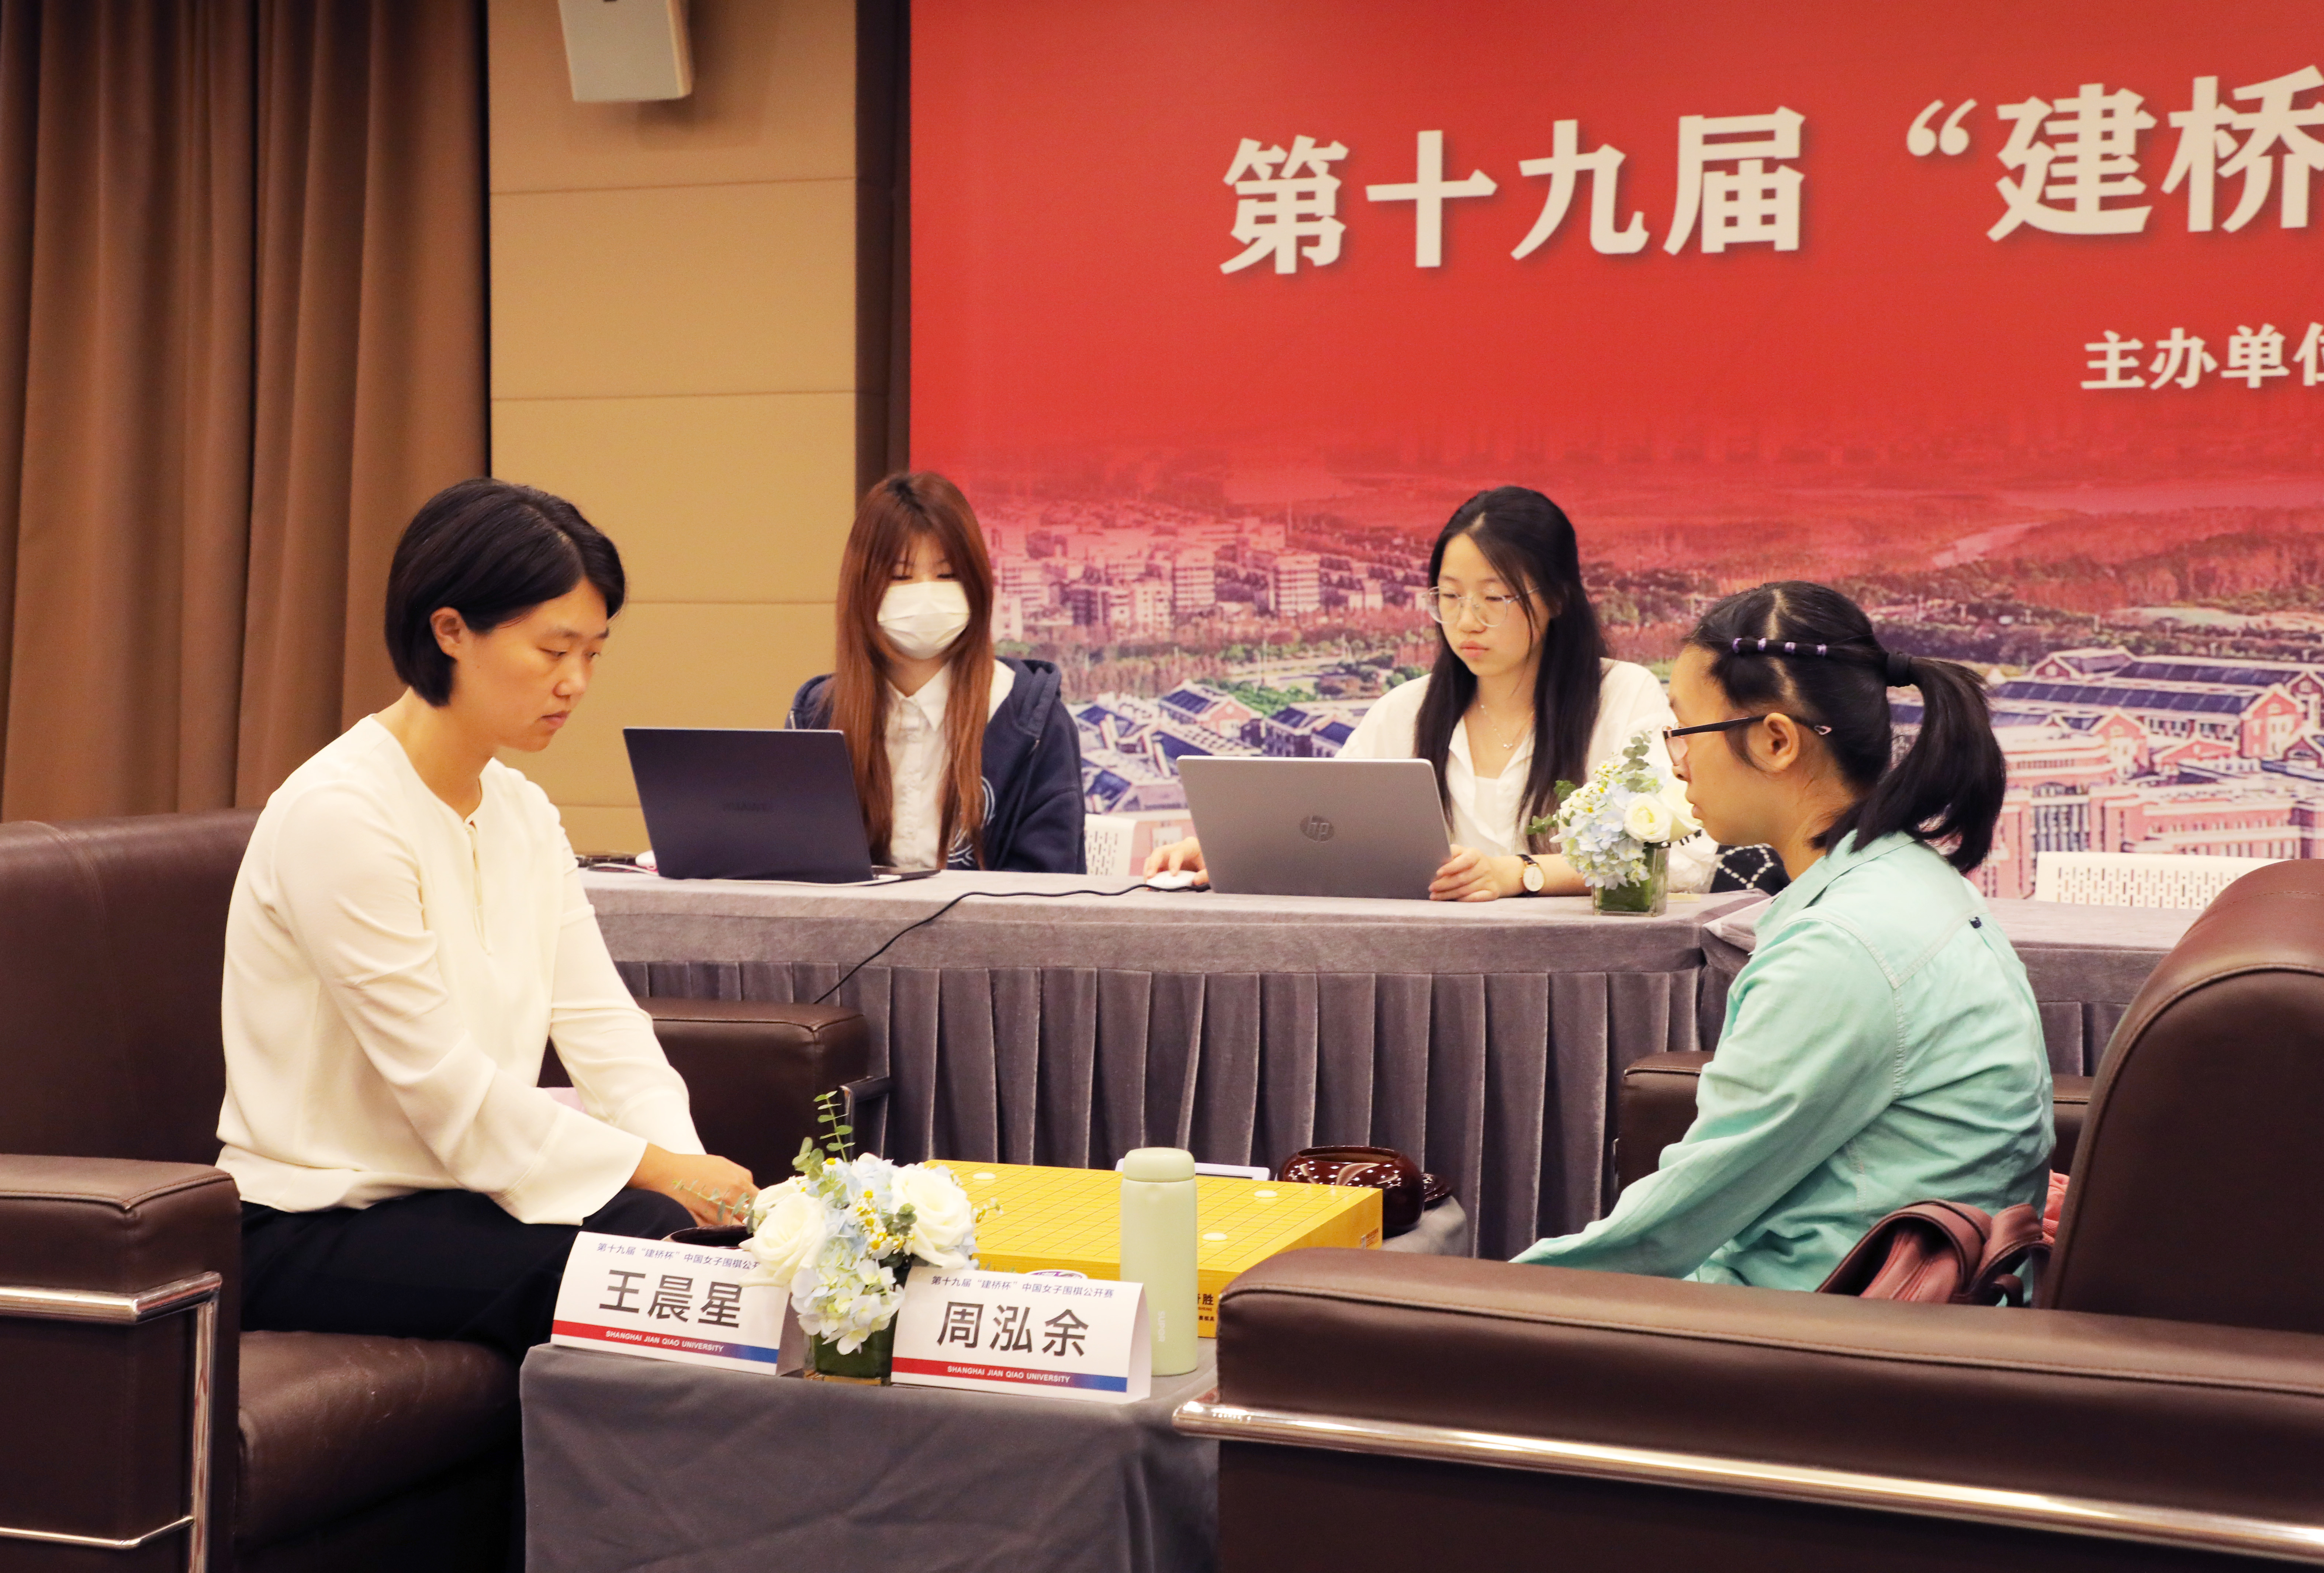 第19届建桥杯中国女子围棋公开赛半决赛在上海建桥学院举行